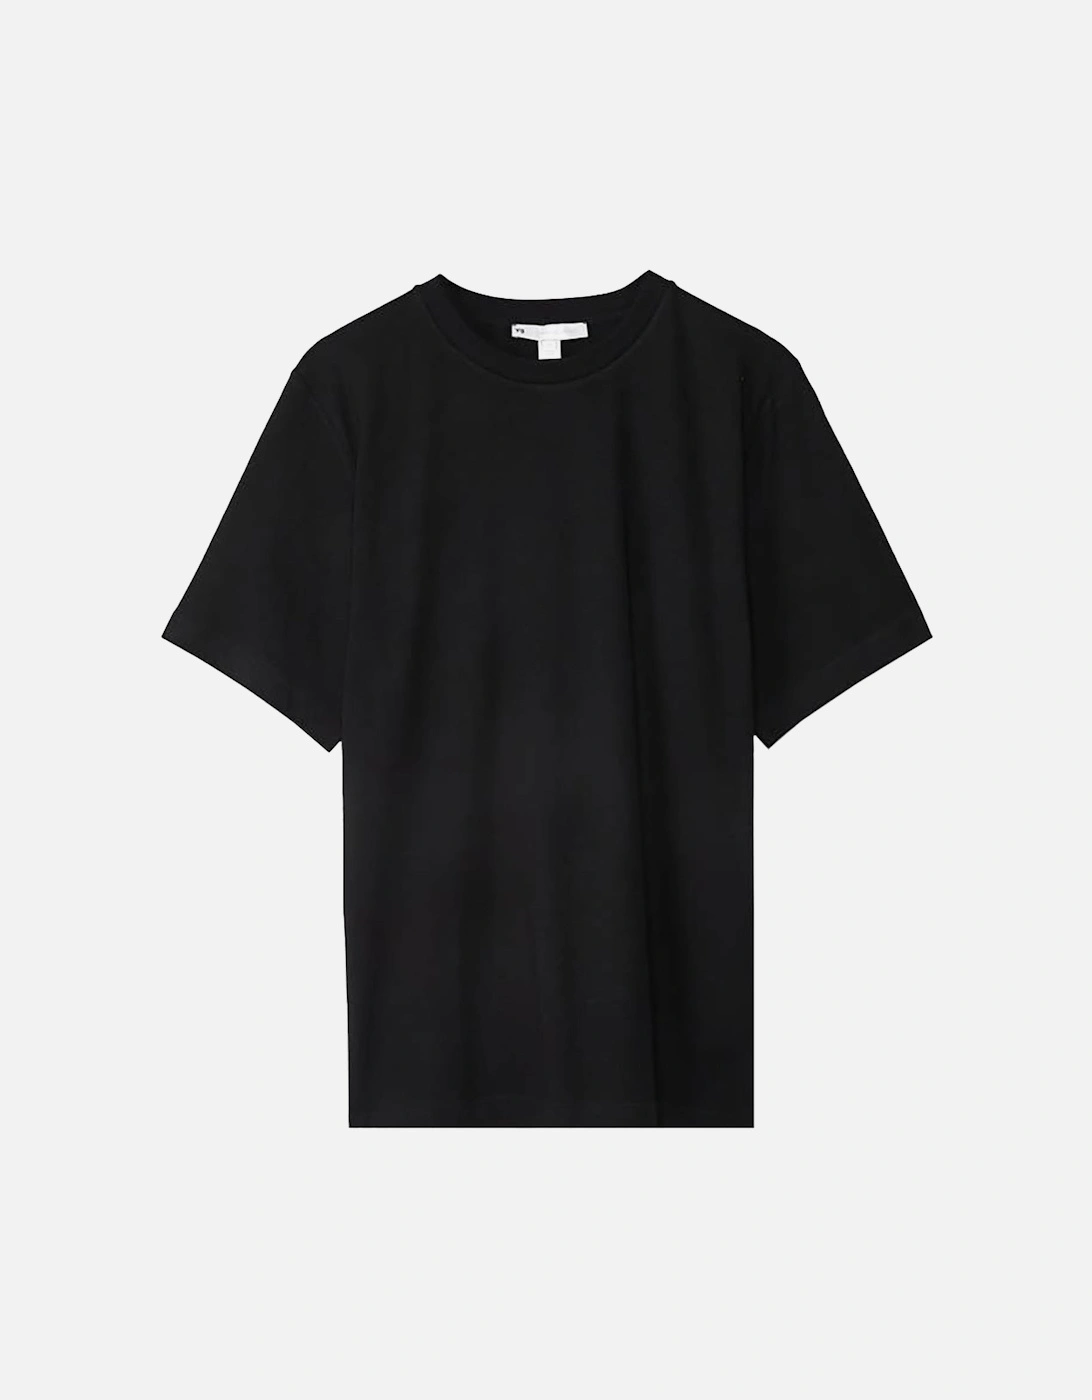 Y-3 Men's Index Short Sleeved T-Shirt Black, 2 of 1